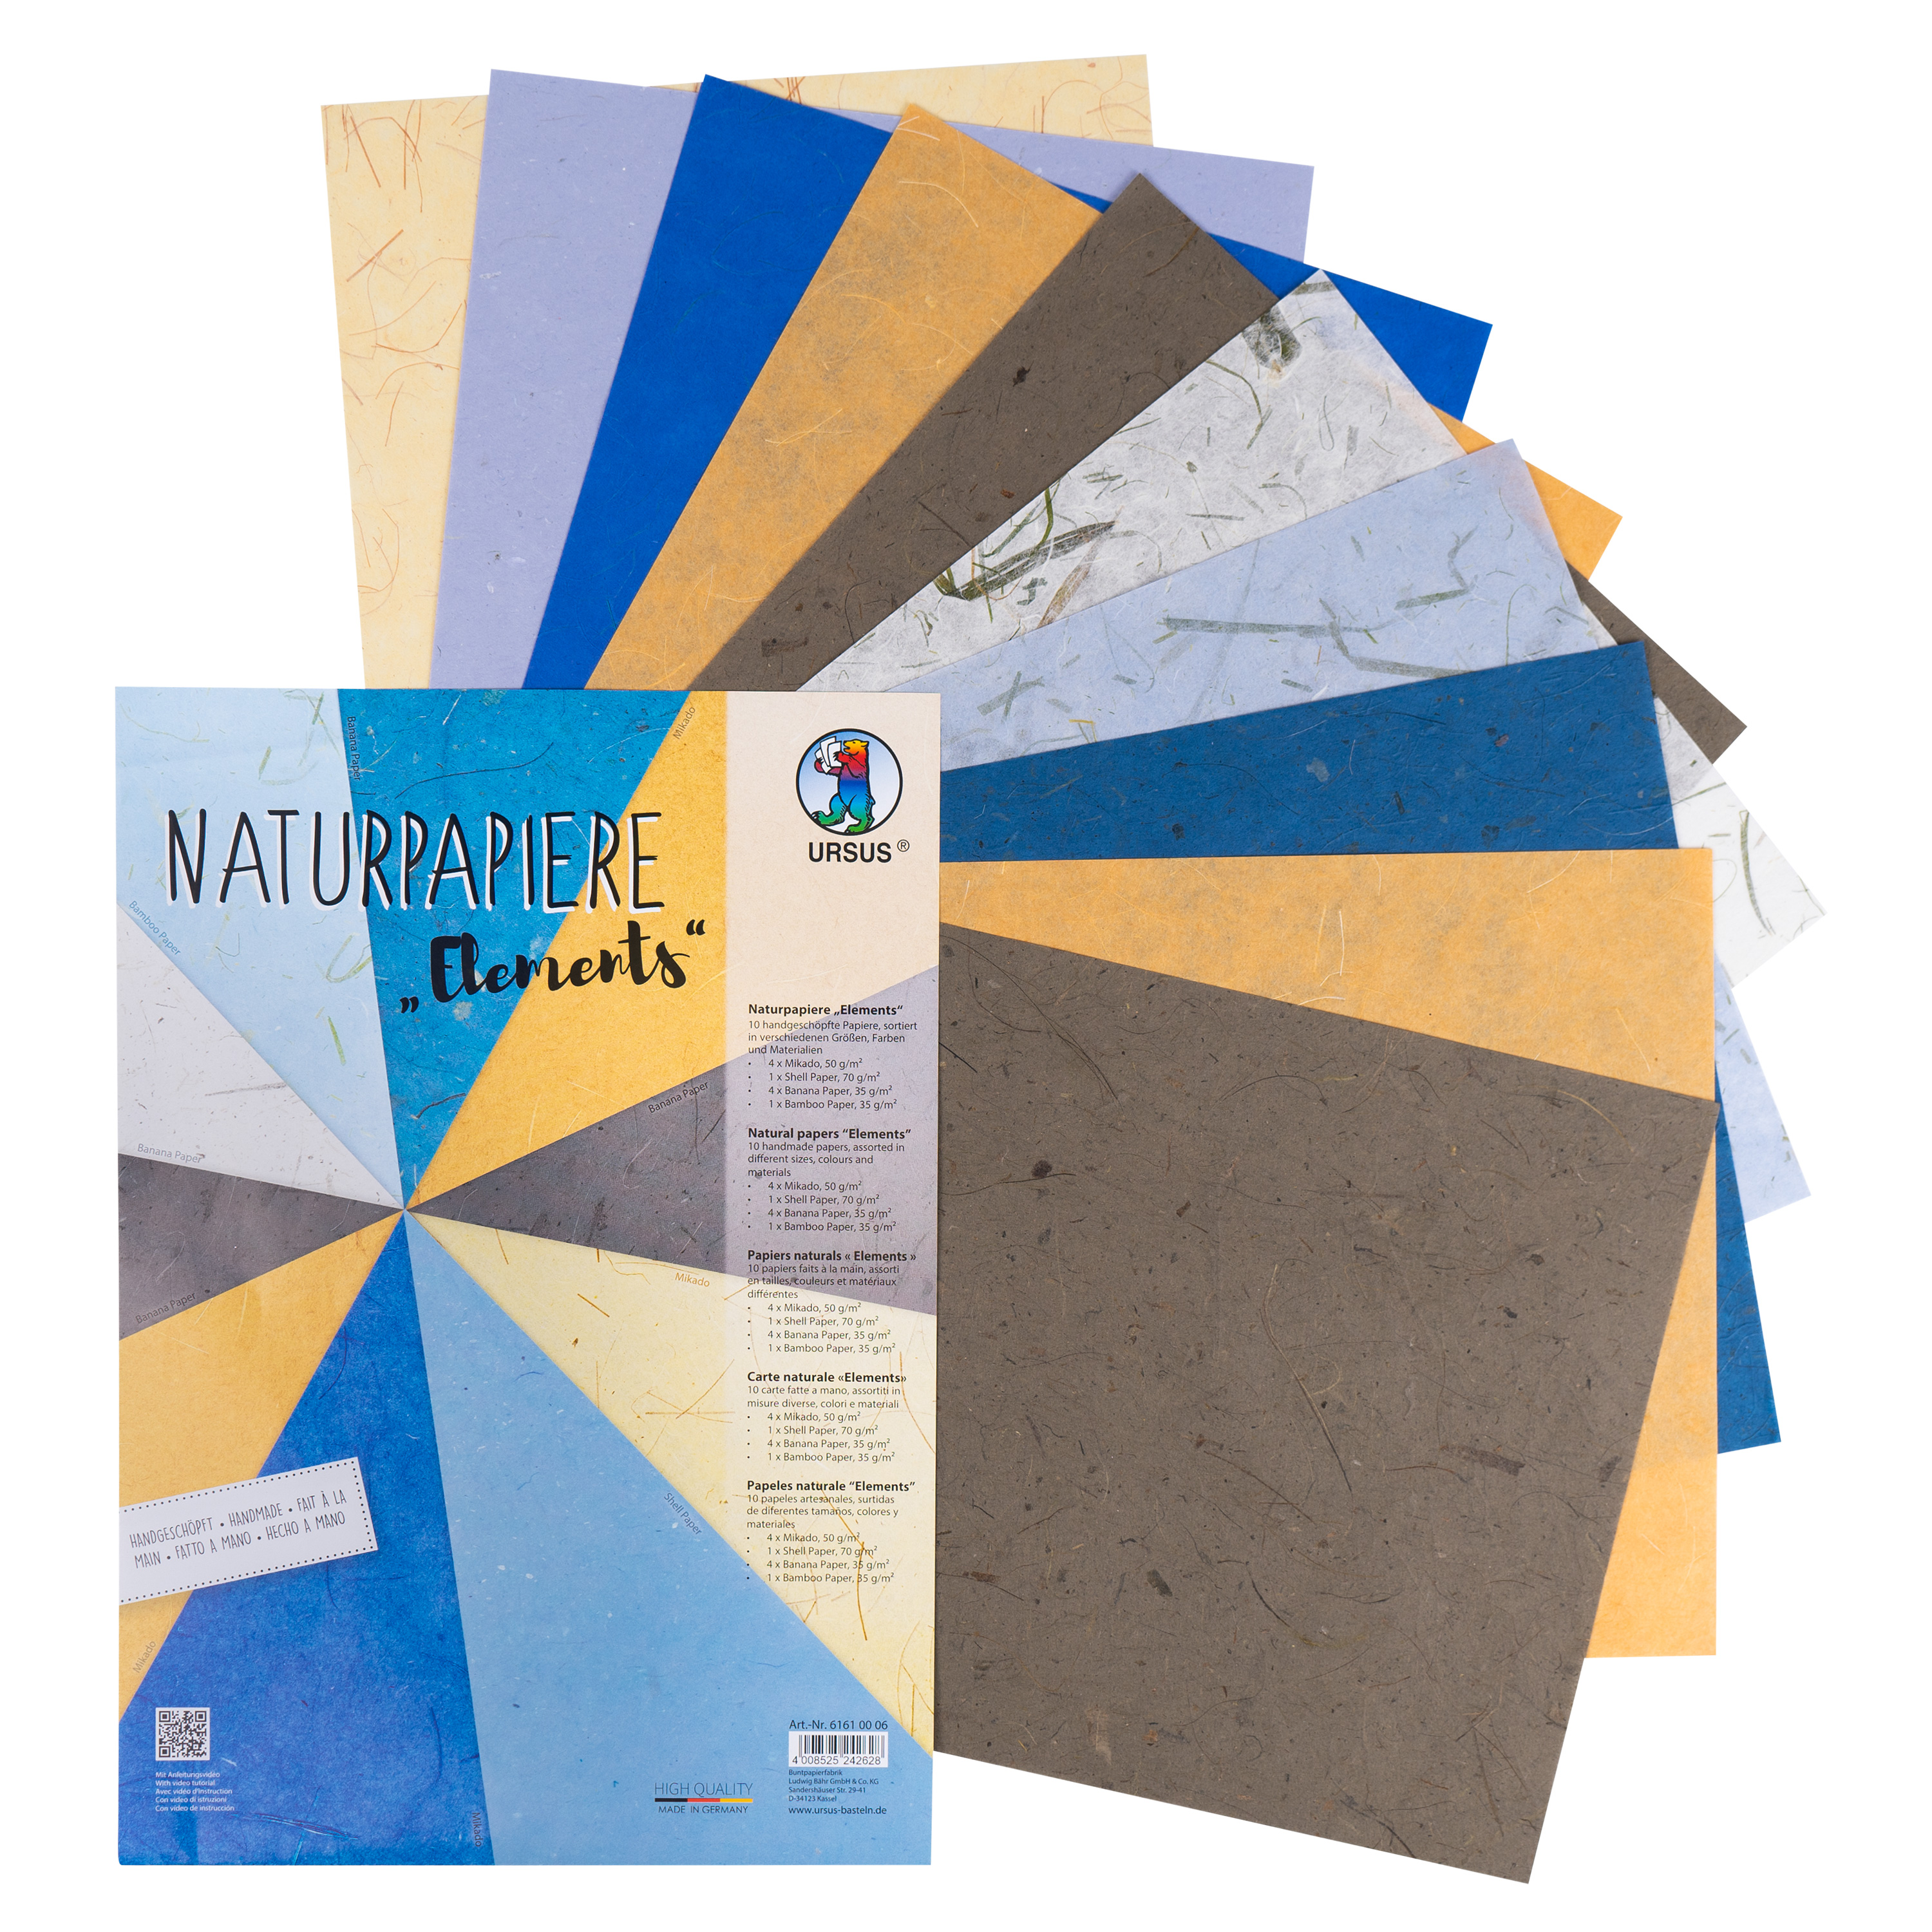 Naturpapier 'Elements'